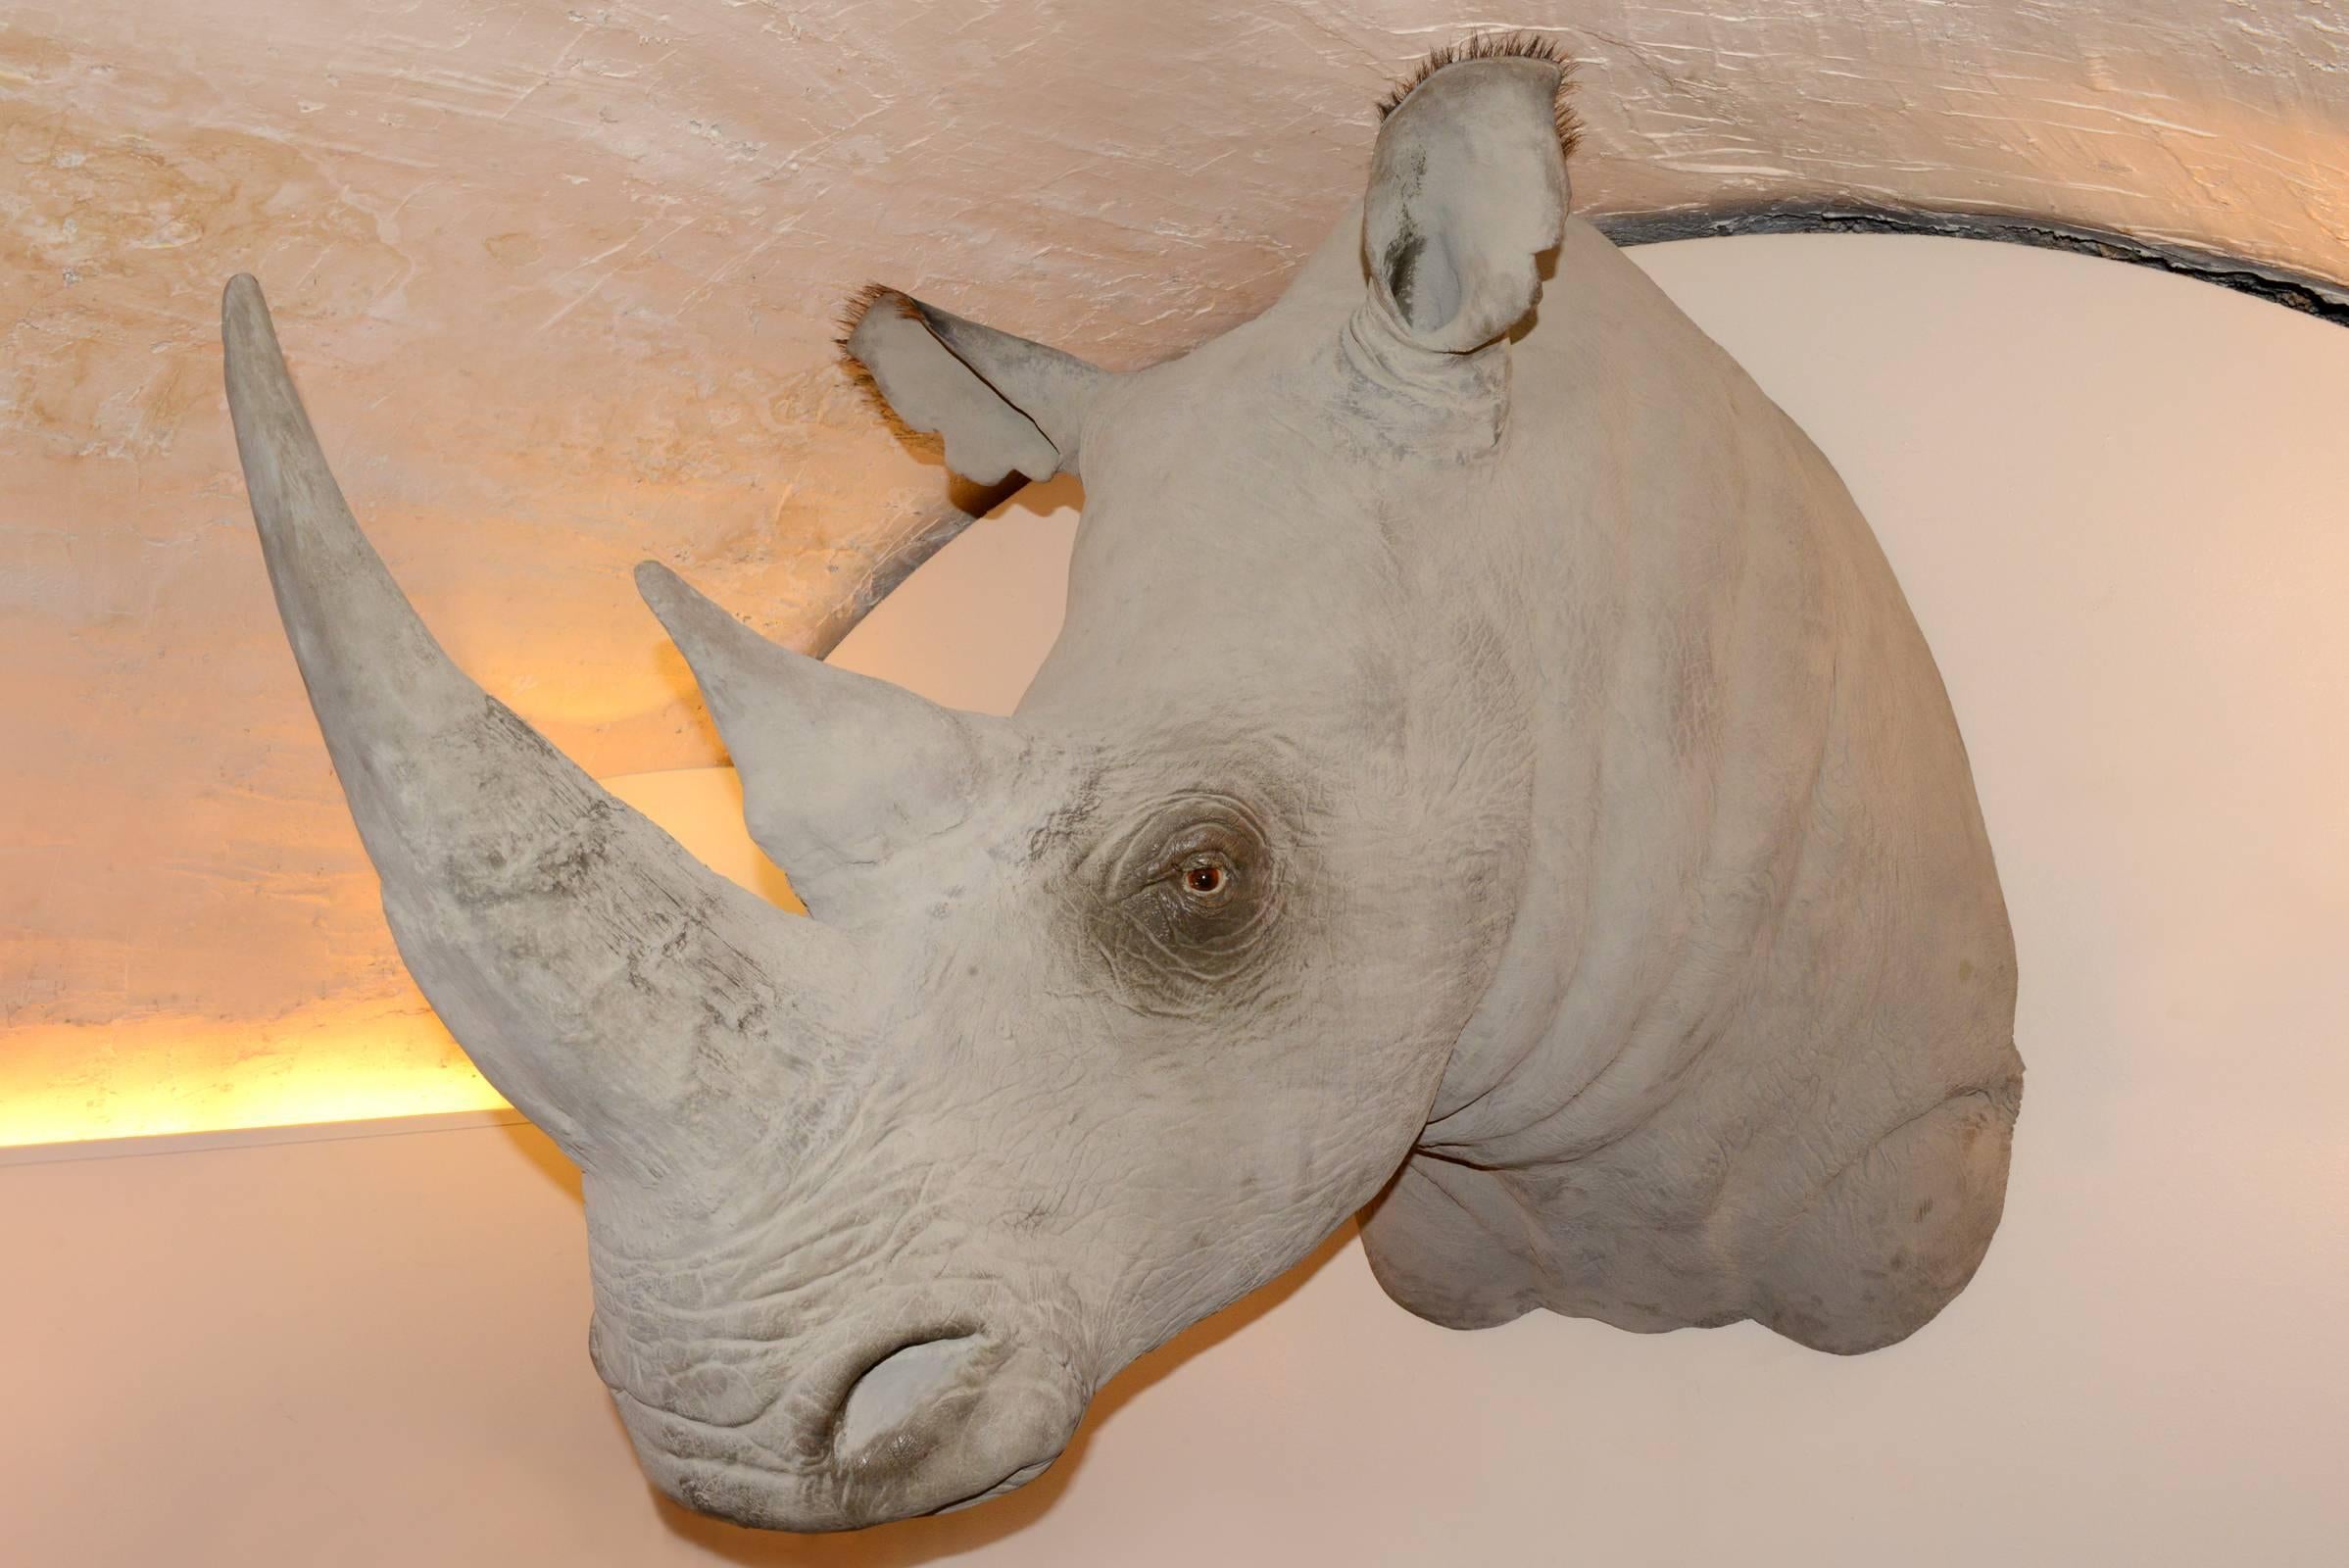 Sculpture tête de rhinocéros en fibre de verre, 
poils de rhinocéros véritables sur les yeux et les oreilles, exceptionnels
finition comme une véritable peau de rhinocéros. 
Pièce exceptionnelle.
